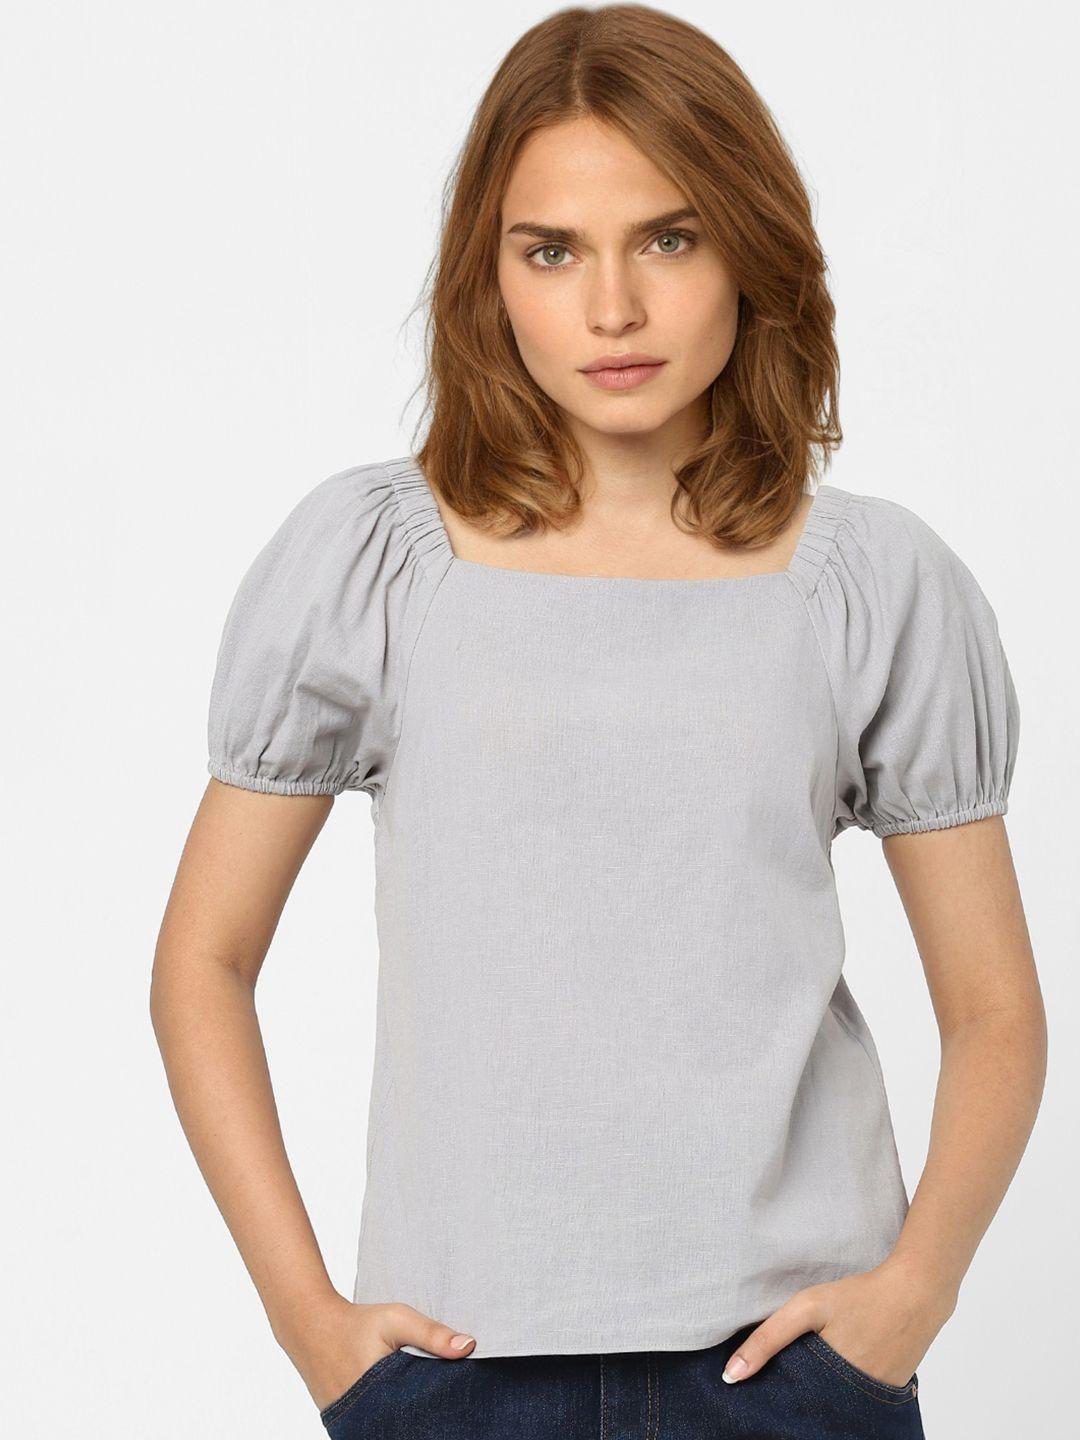 vero moda women grey solid top